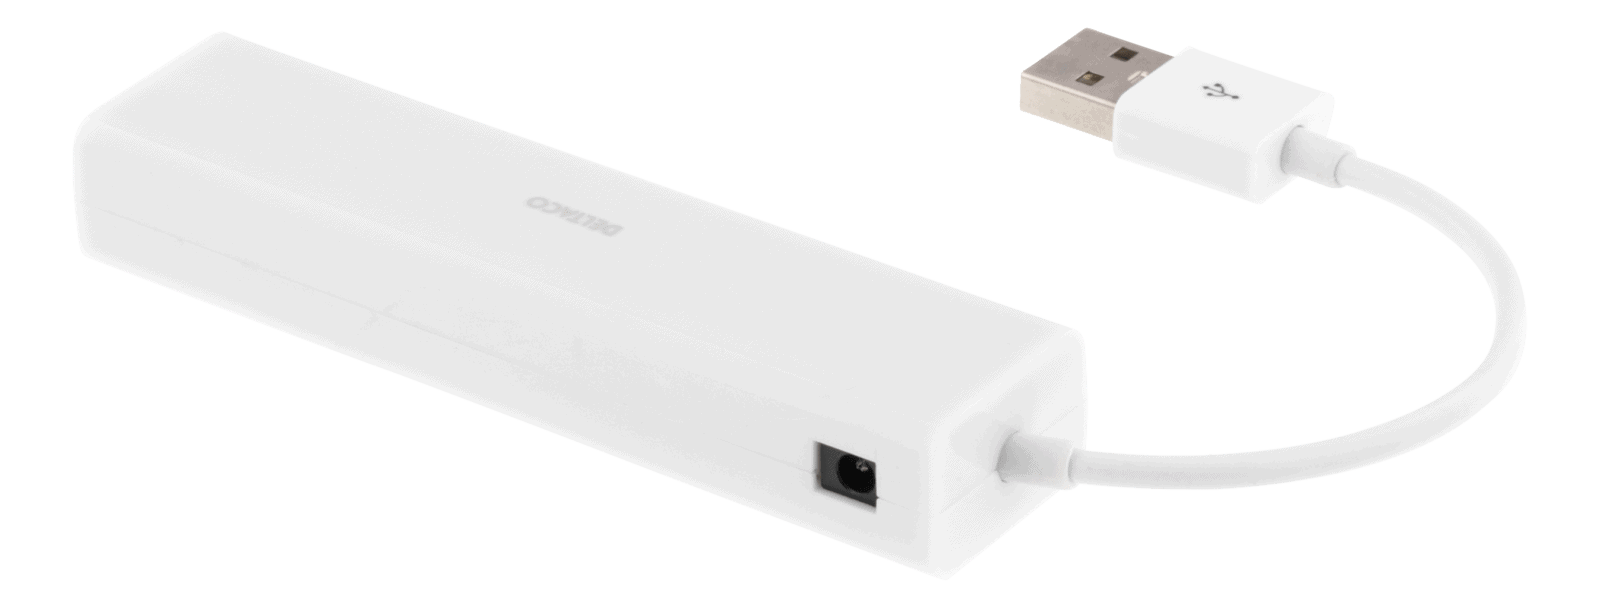 DELTACO USB 2.0 -hubi, 4x Type A naaras, musta | UH-480